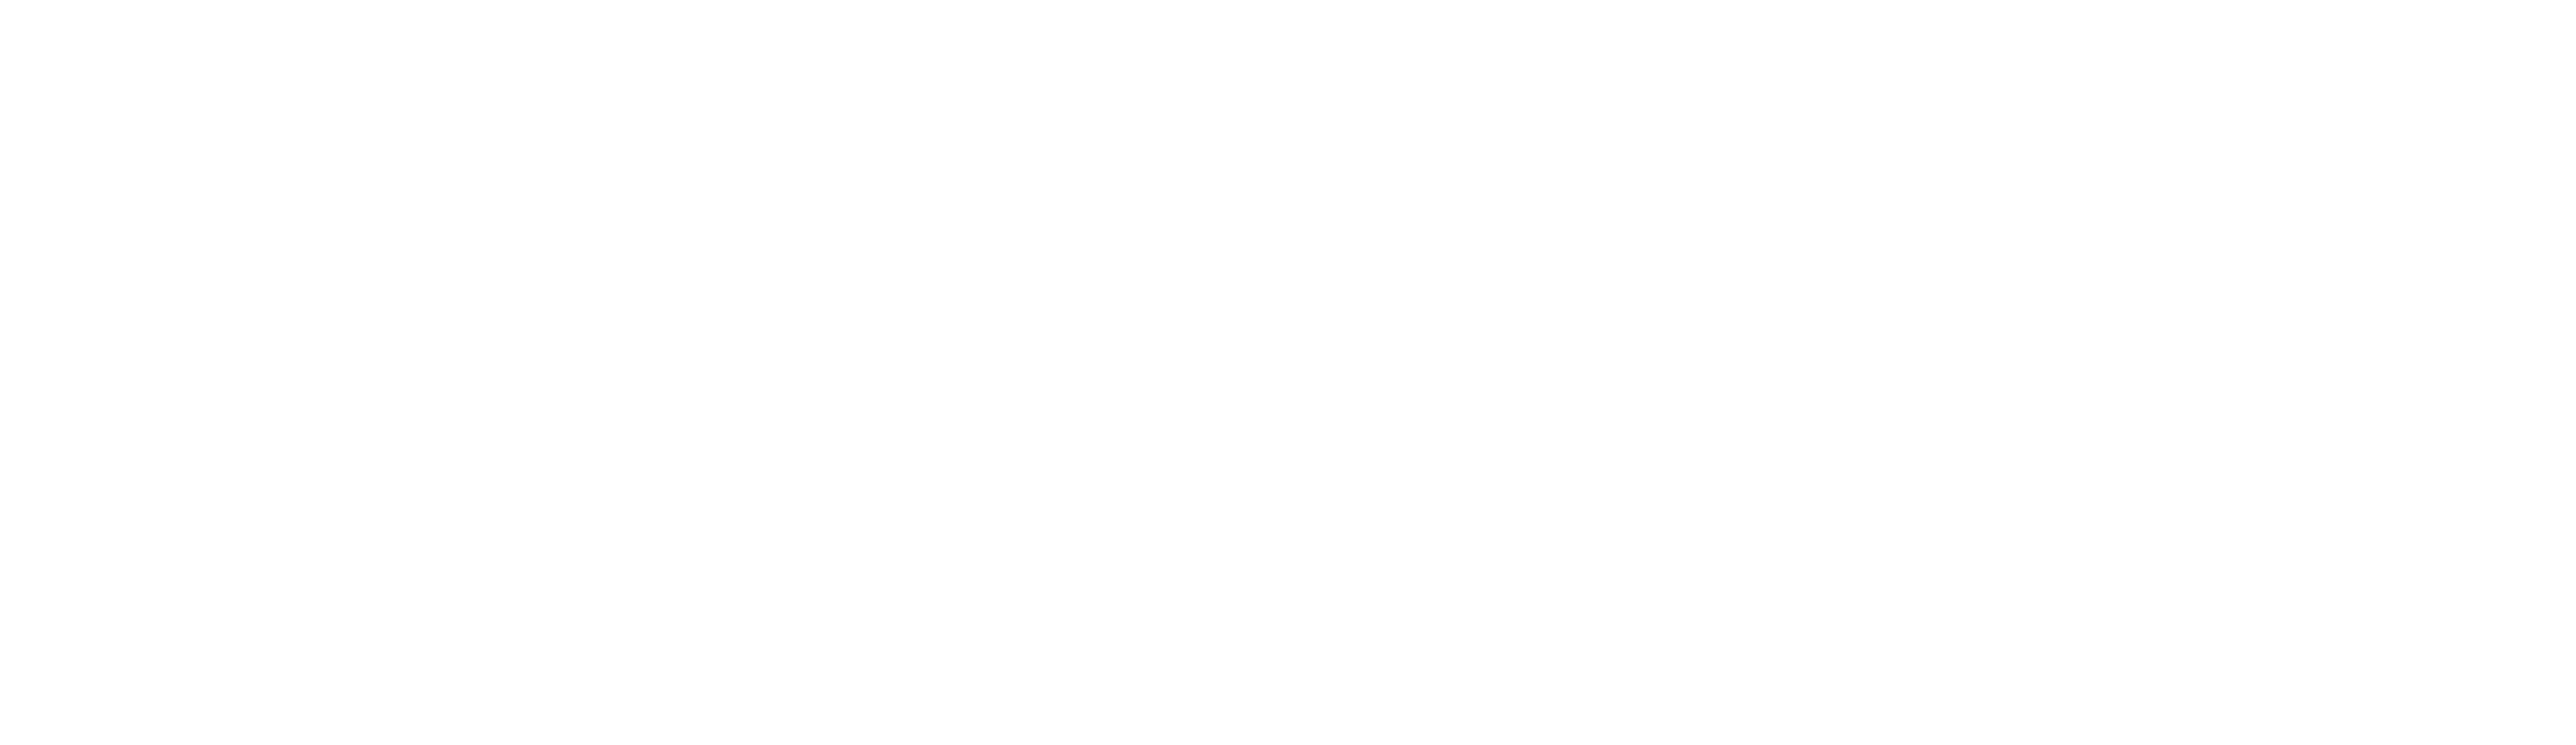 hookcatch logo